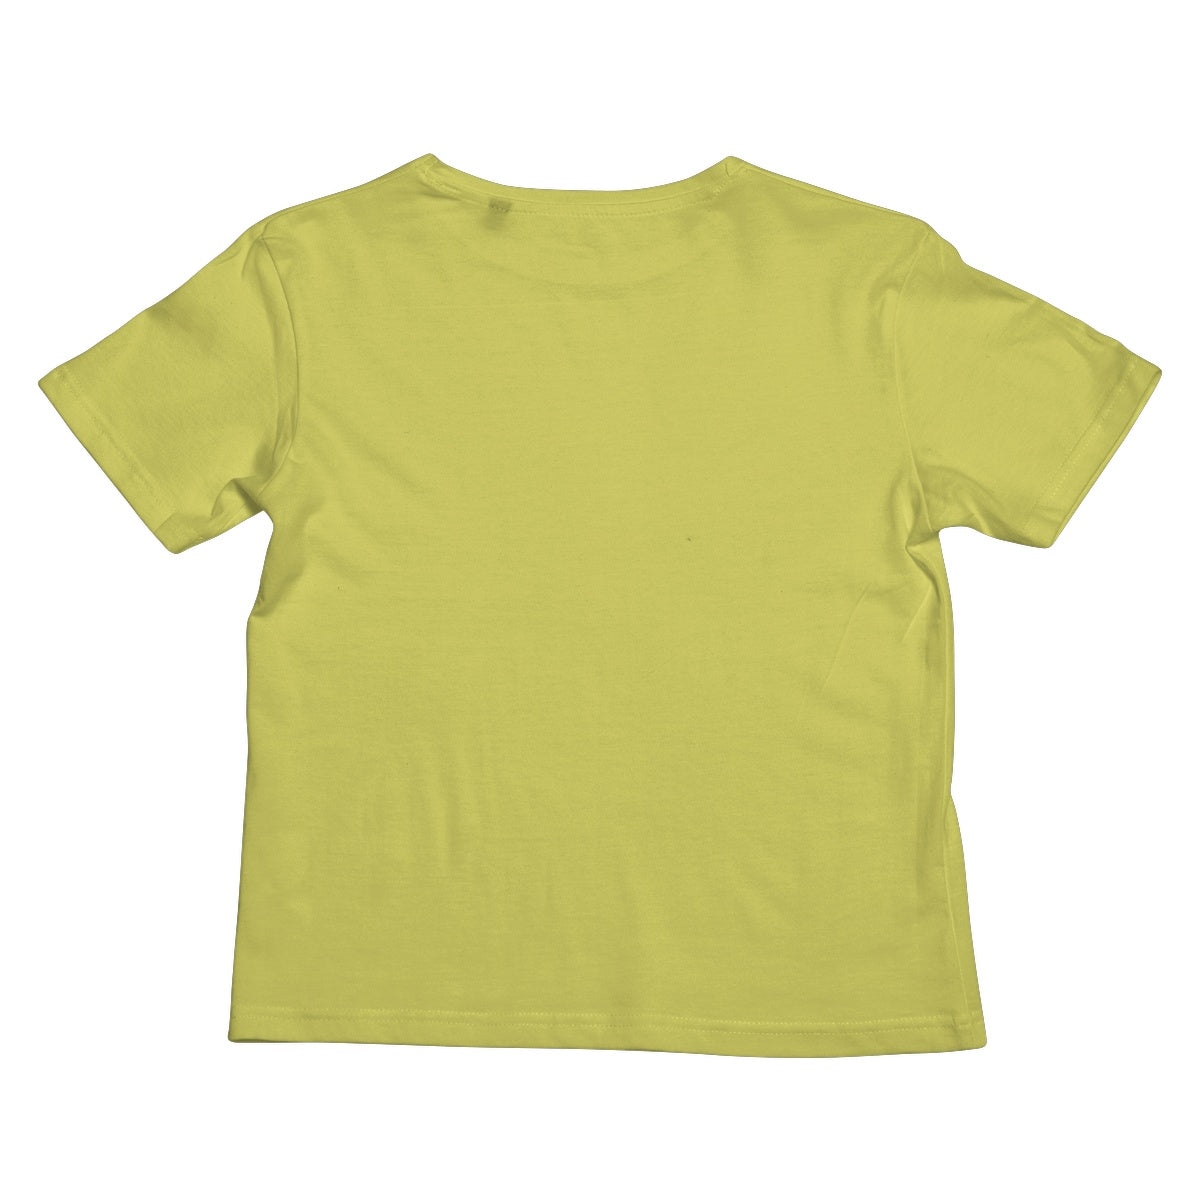 Green Kids T-Shirt